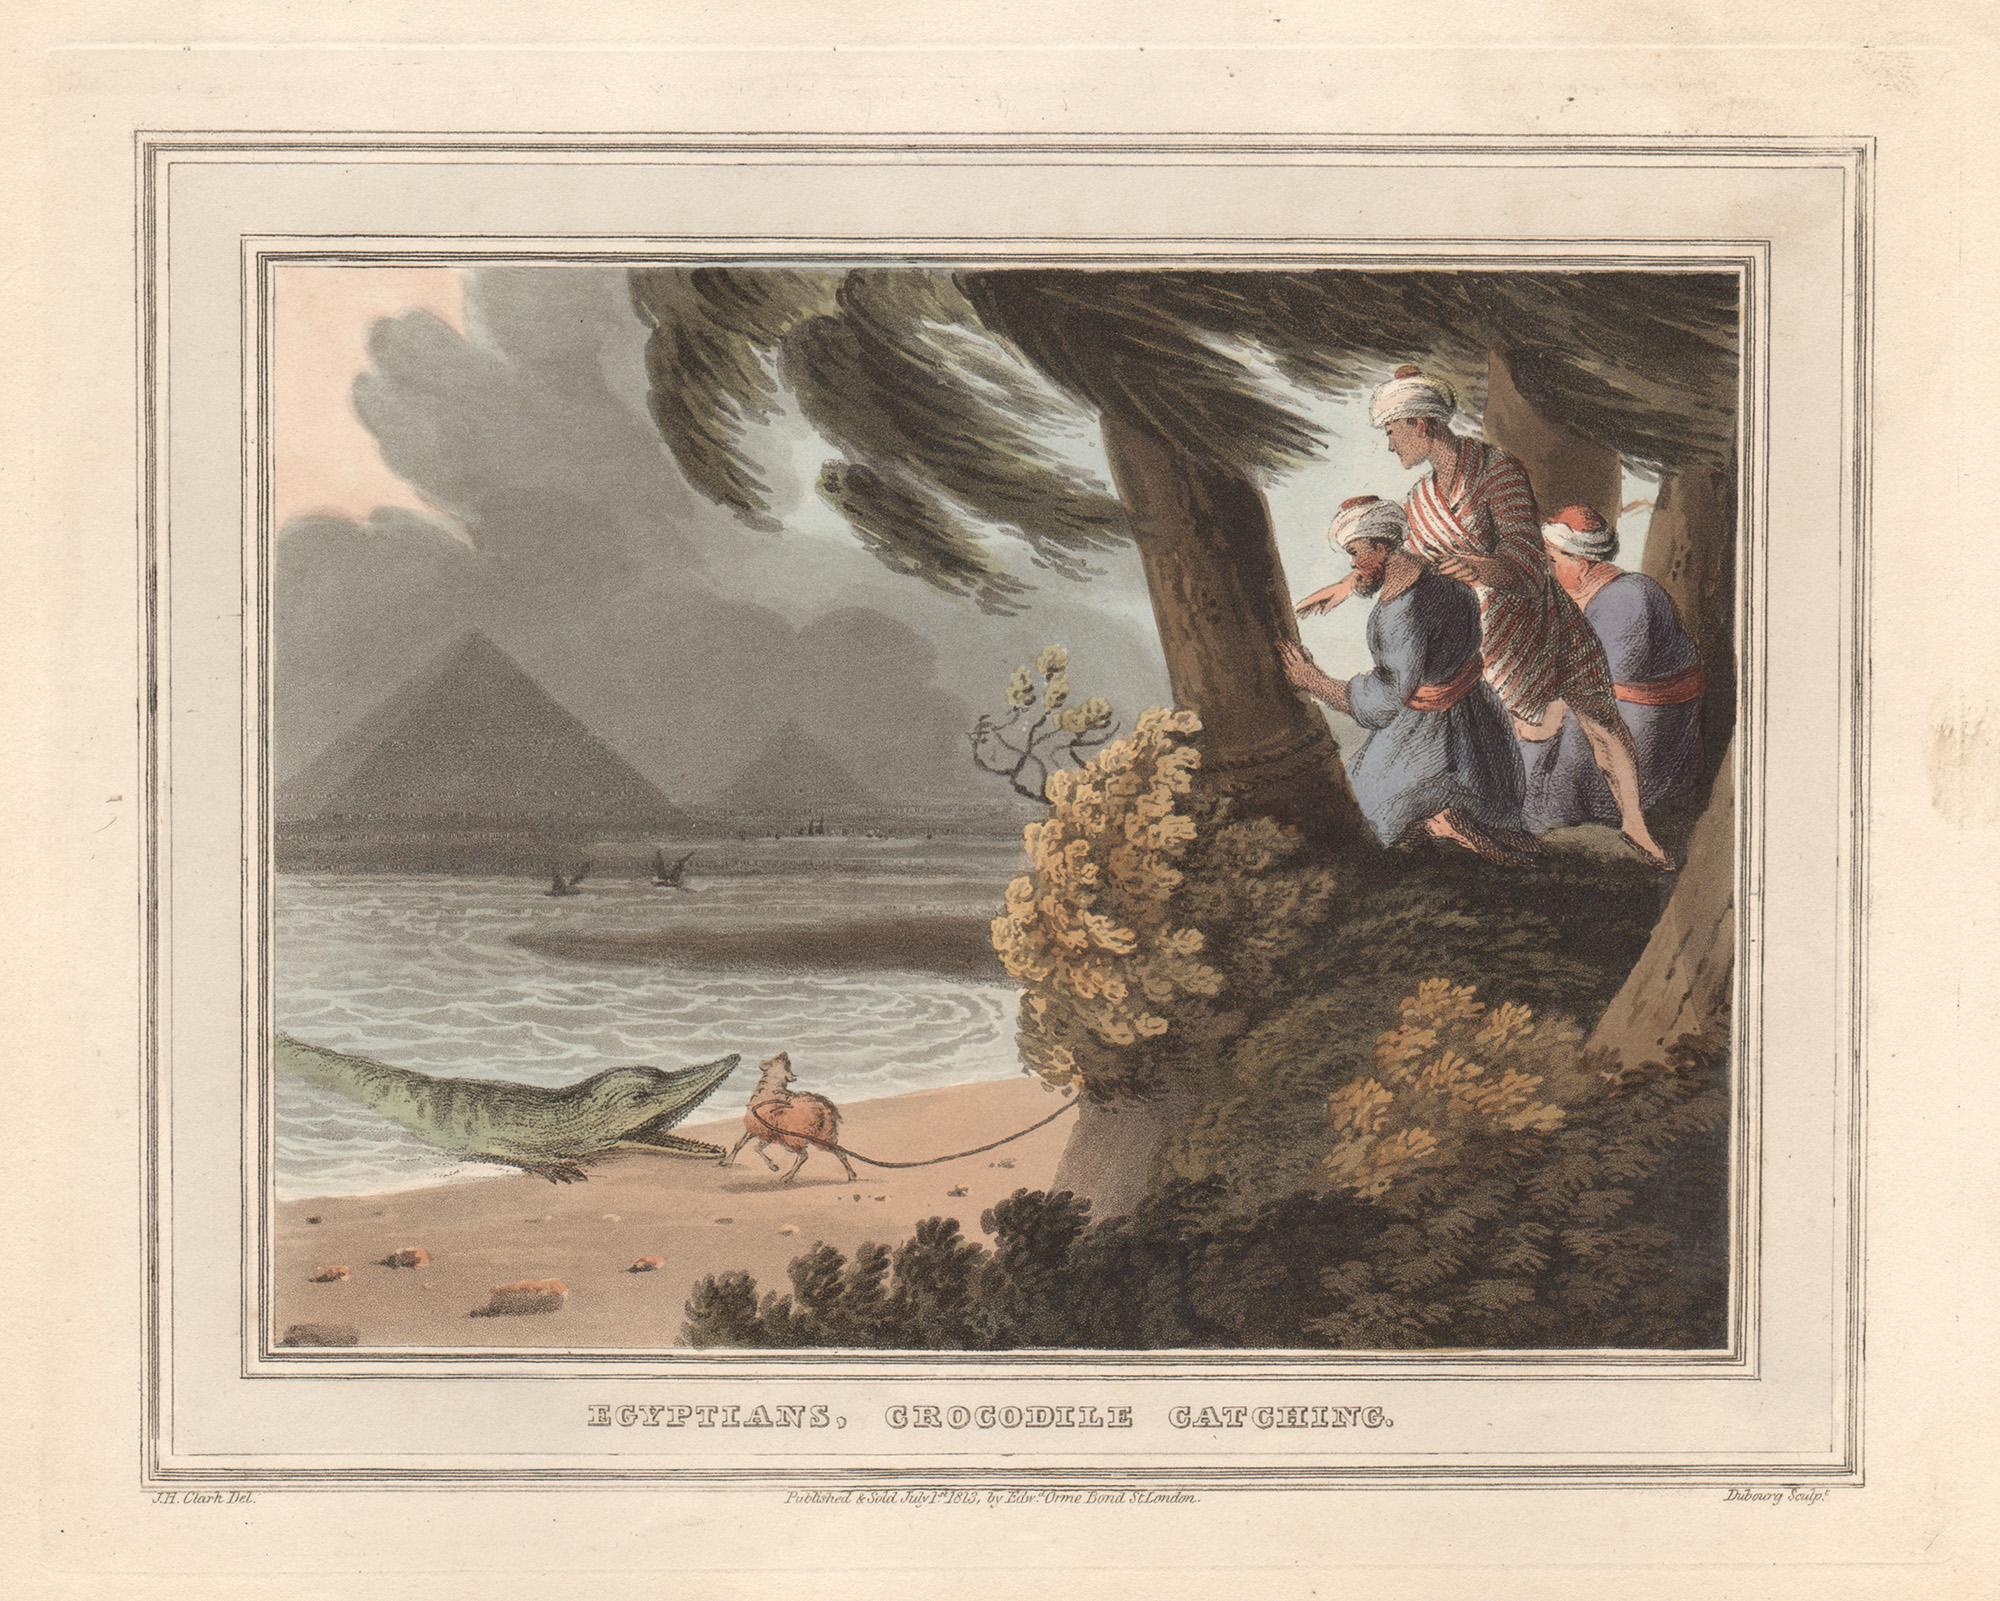 Ägyptische Ägypter, Krokodilcatching, Aquatinta-Gravur- Jagddruck, 1813